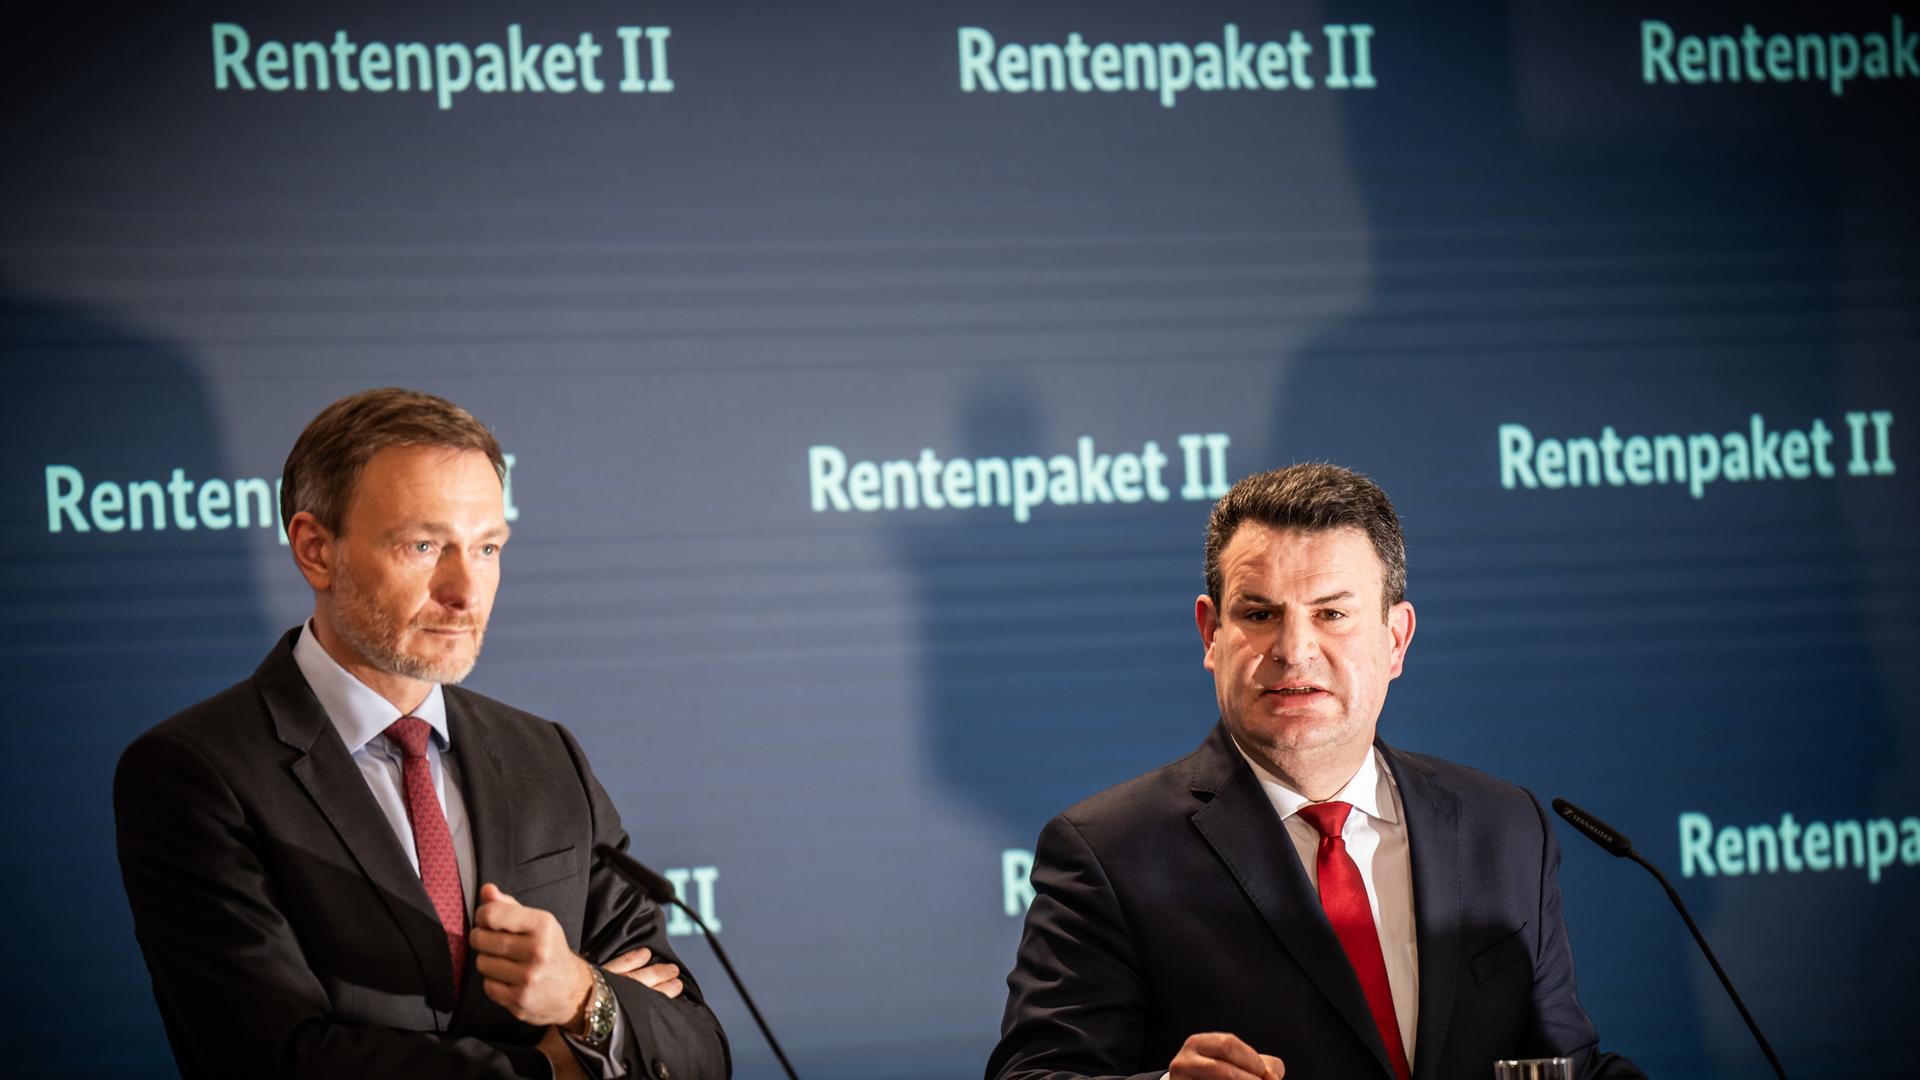 Hubertus Heil (SPD), Bundesminister für Arbeit und Soziales, spricht neben Christian Lindner (FDP), Bundesminister der Finanzen, bei einem Pressestatement zum geplanten Rentenpaket II.